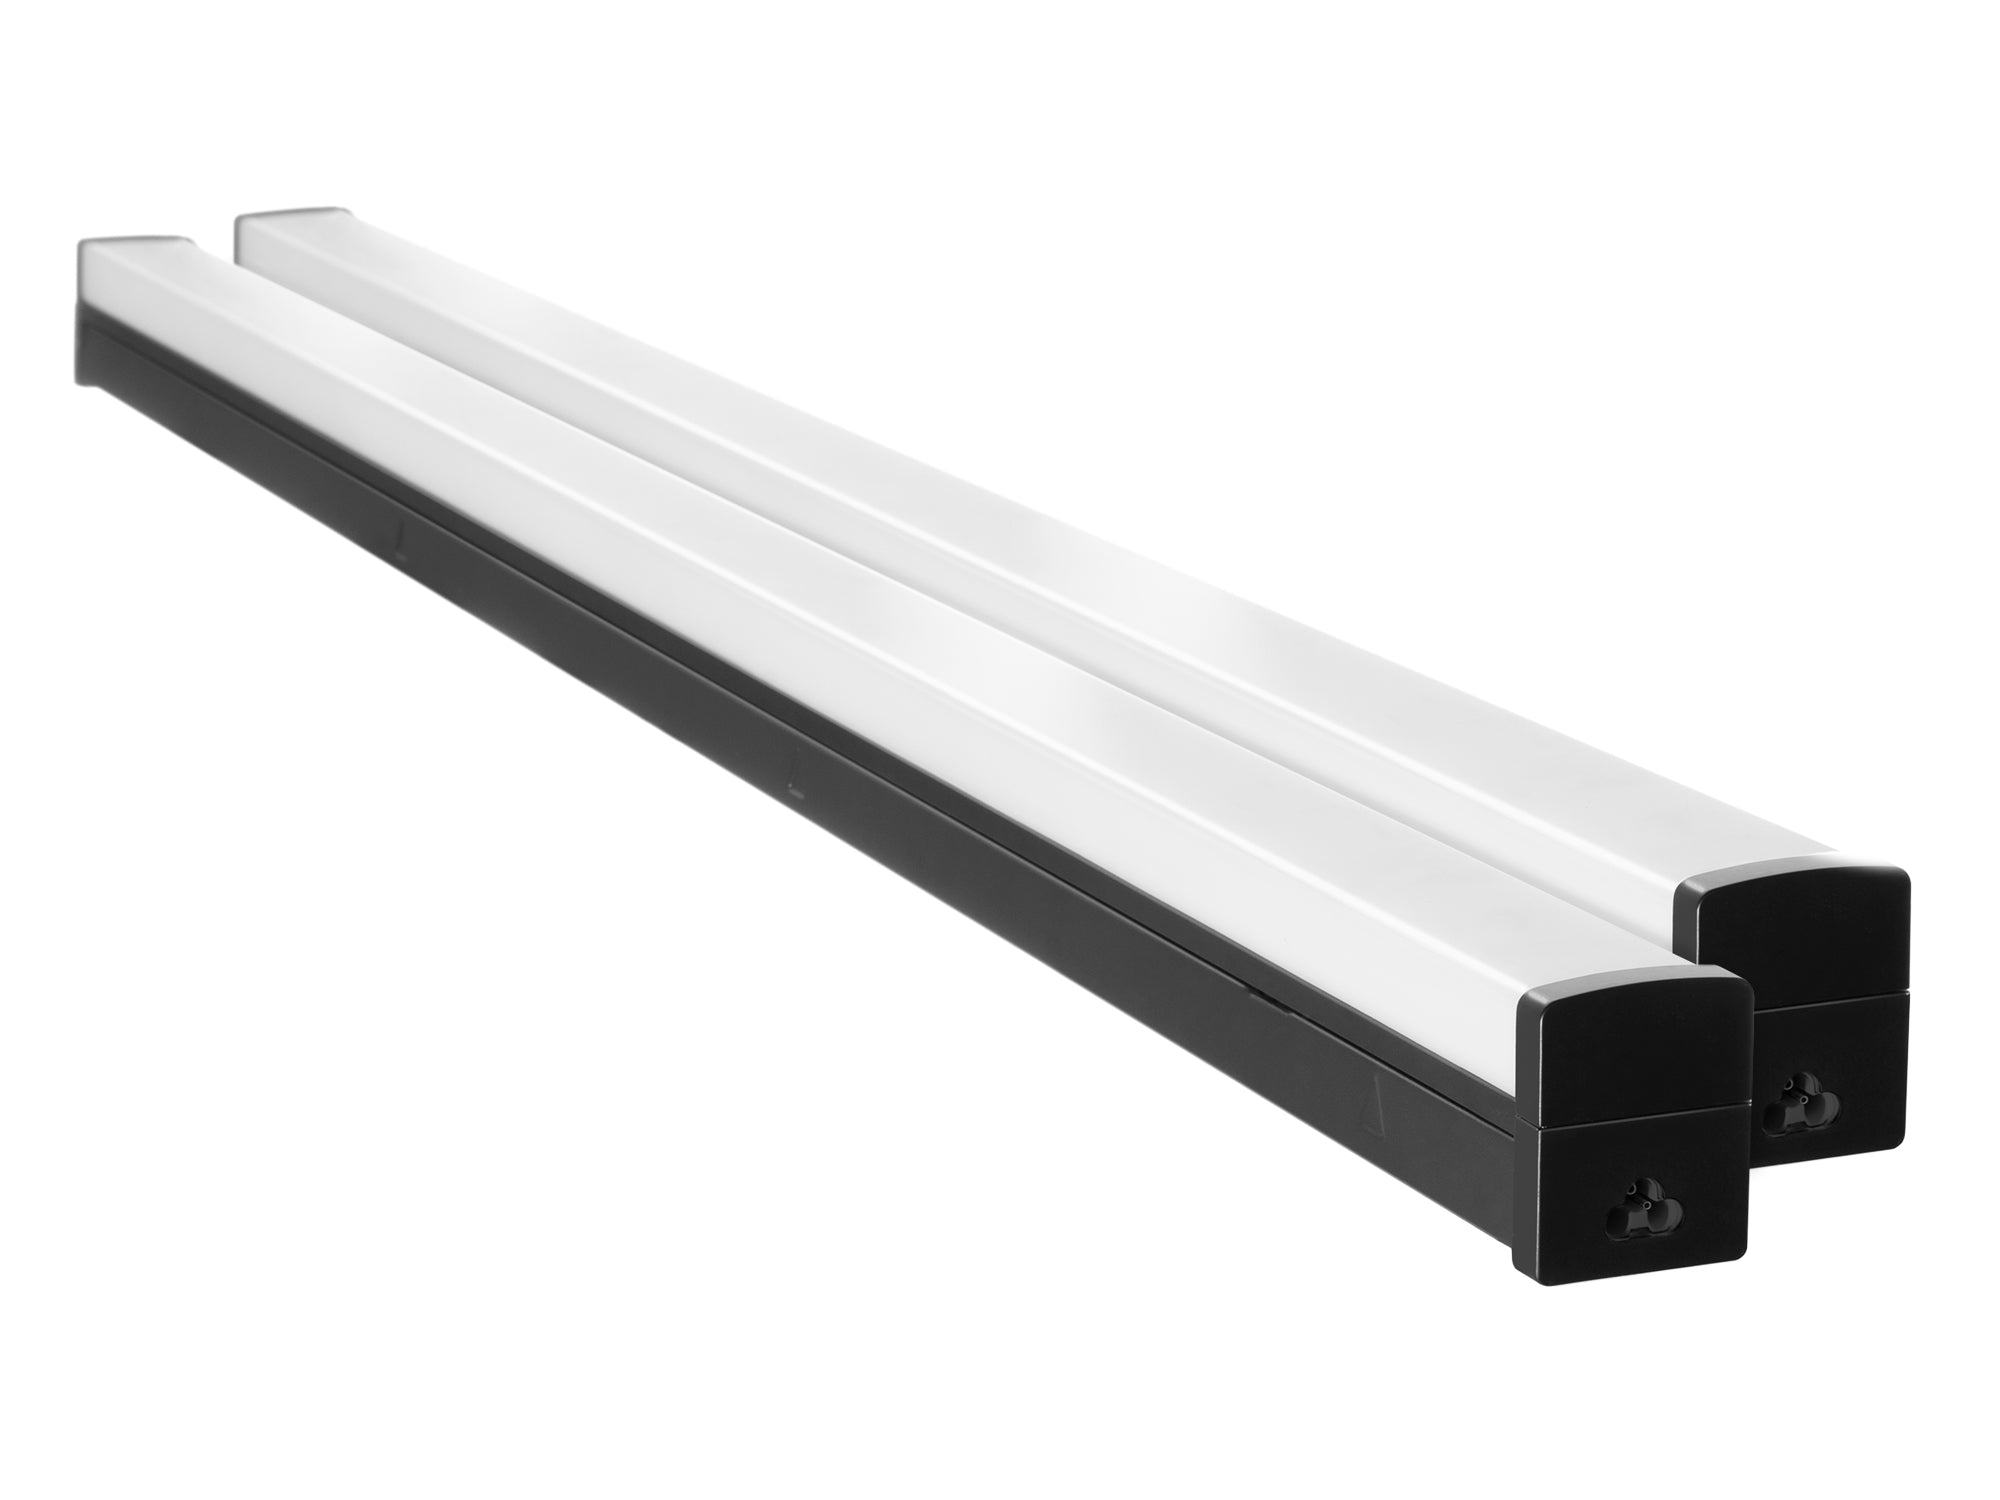 4ft Linkable LED Ceiling Light Kit (Pack of 2)